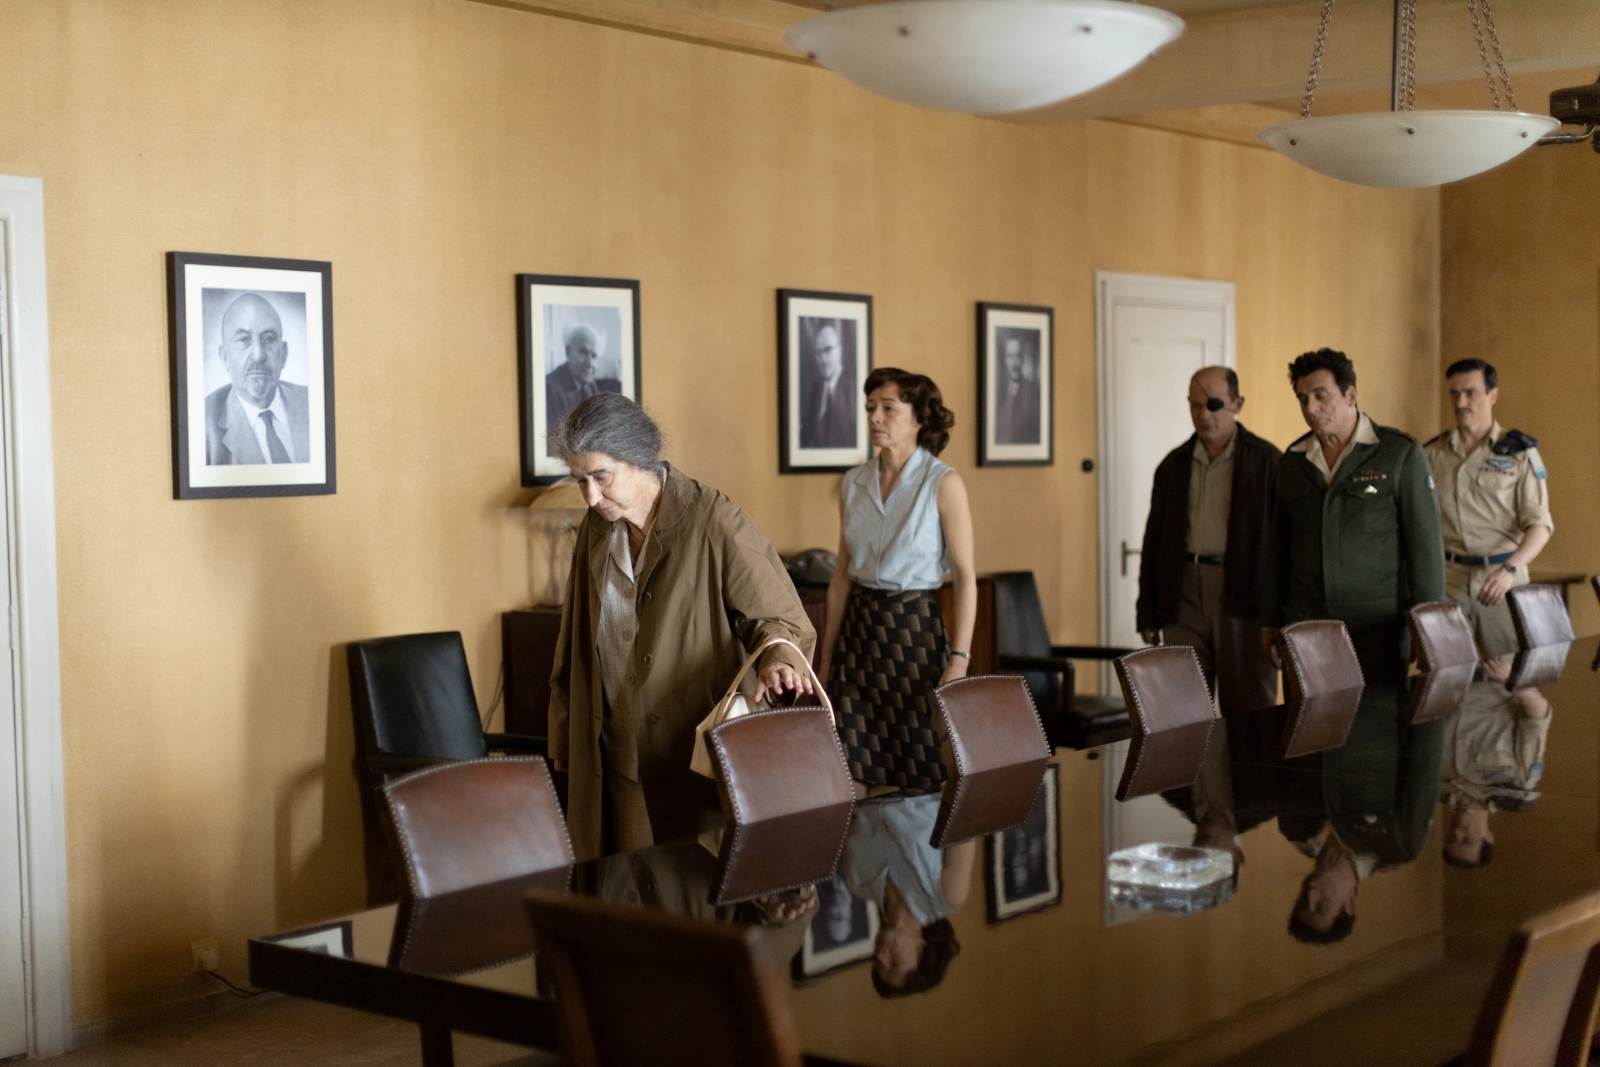 Kadr z filmu "Golda" - za główną bohaterką stoją kolejno: kobieta i trzej mężczyźni. Wszyscy są w jakimś pomieszczeniu i znajdują się za długim stołem.